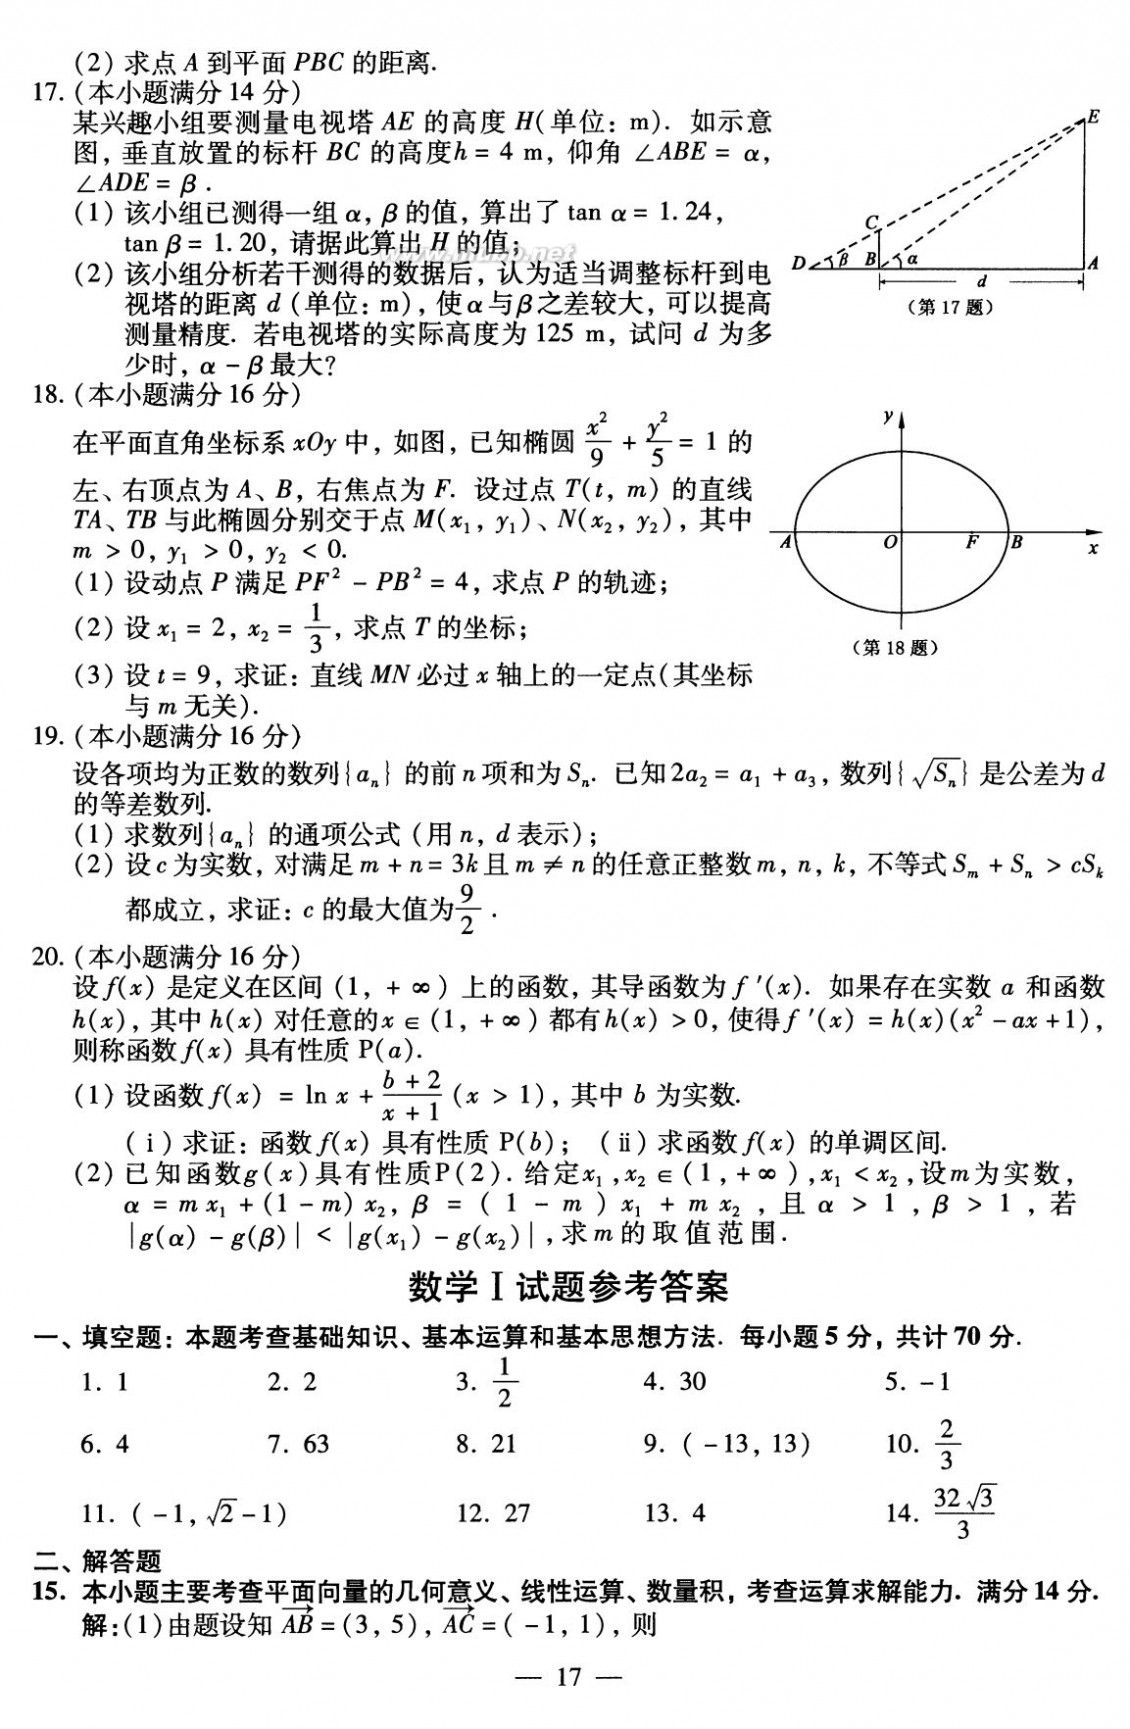 2010江苏数学高考 2010年江苏高考数学试卷及参考答案